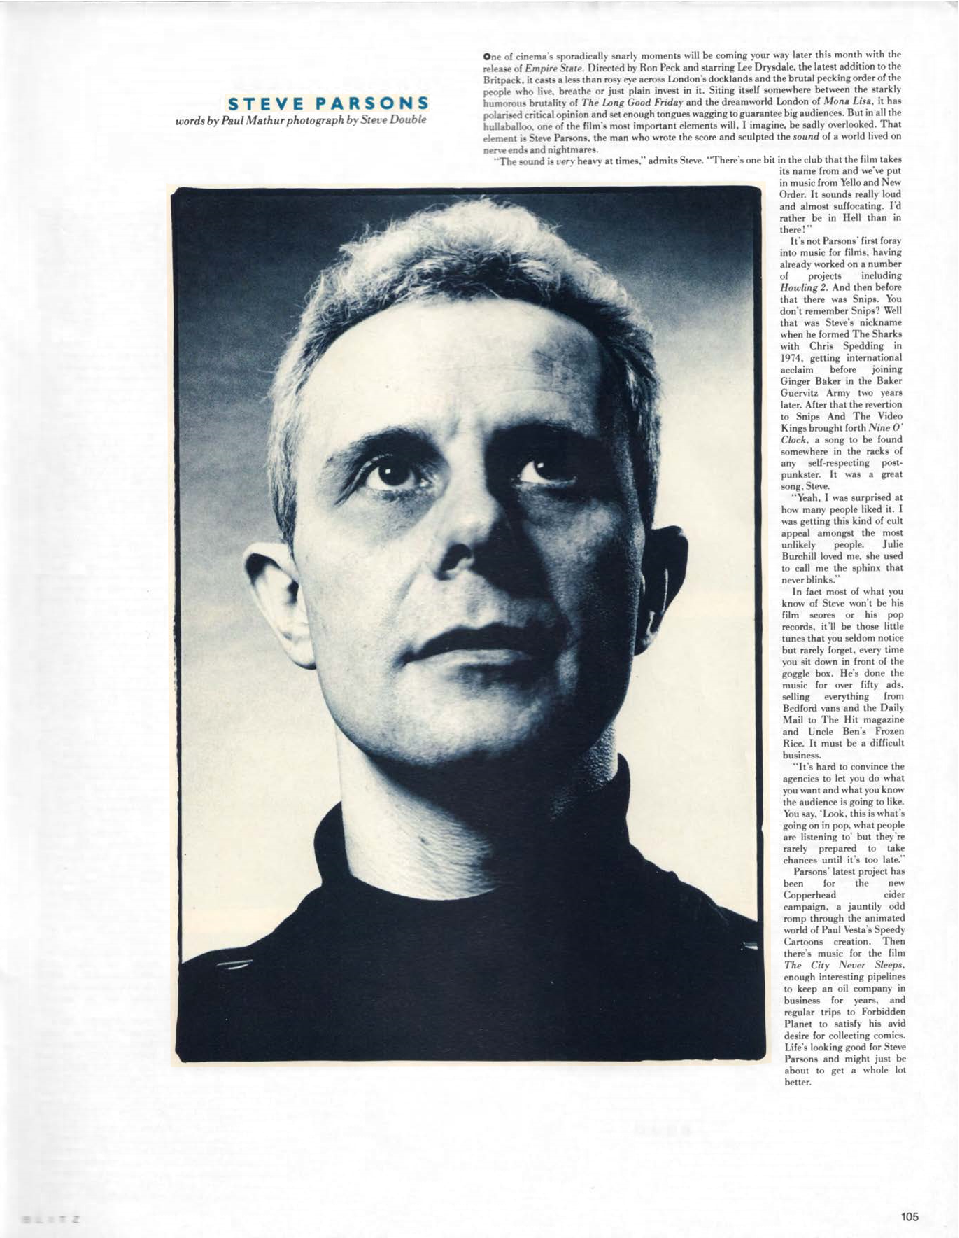 BLITZ 54 Jun 1987 Steve Parsons interview by Paul Mathur photograph by Steve Double